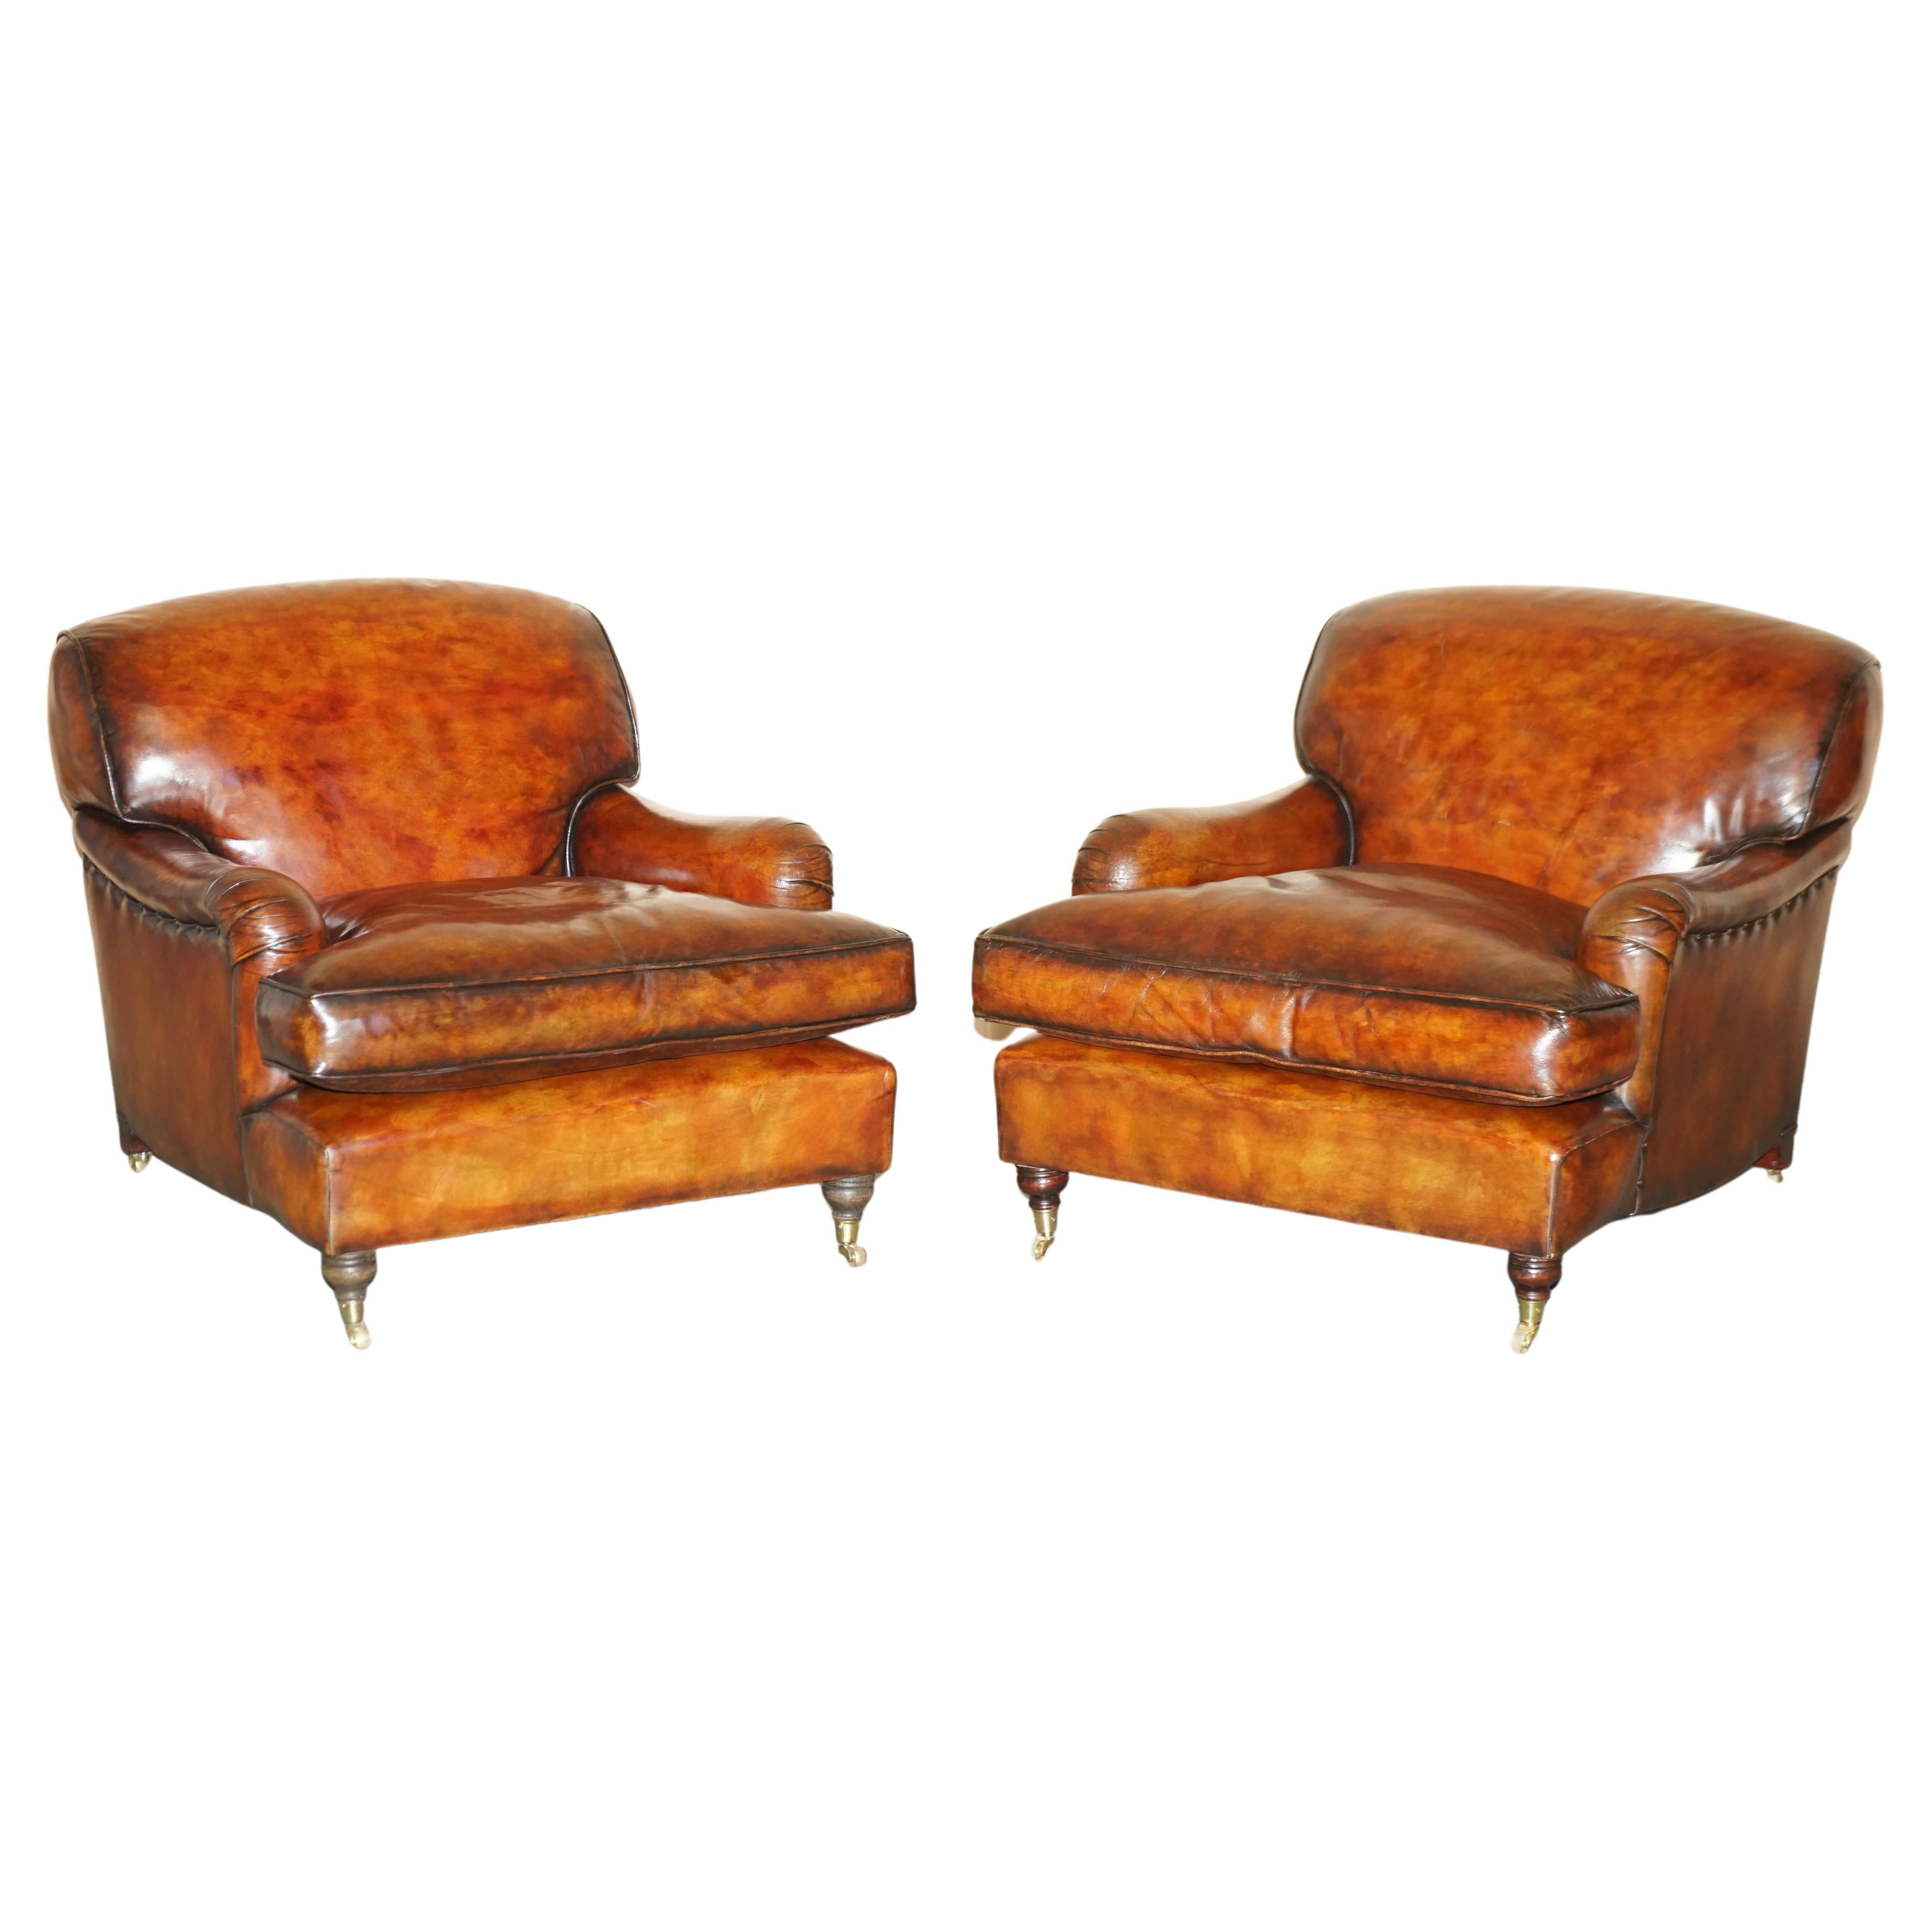 Howard George Smith paire de fauteuils en cuir marron à volutes de style signature